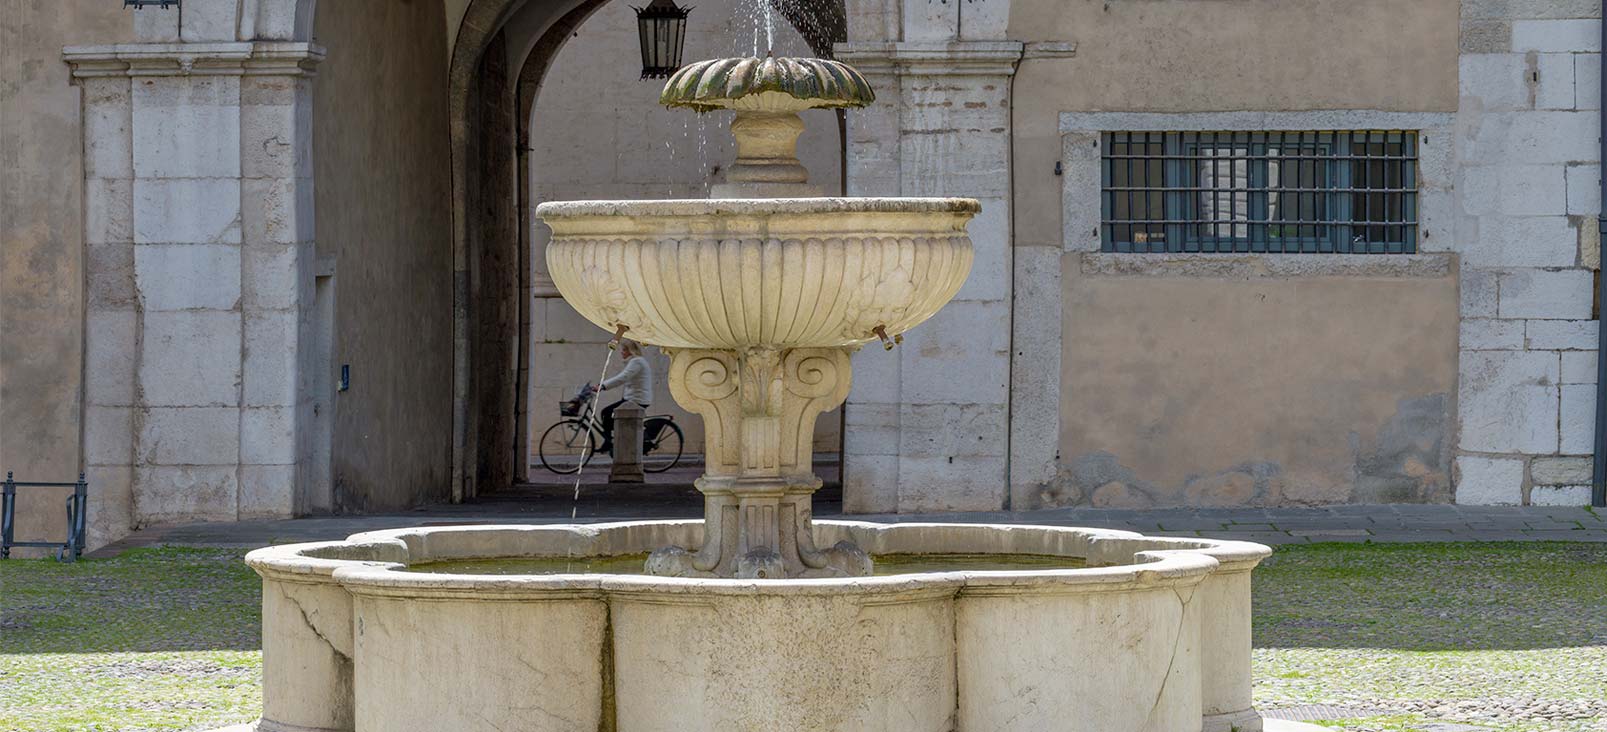 Restoration of Broletto Fountain